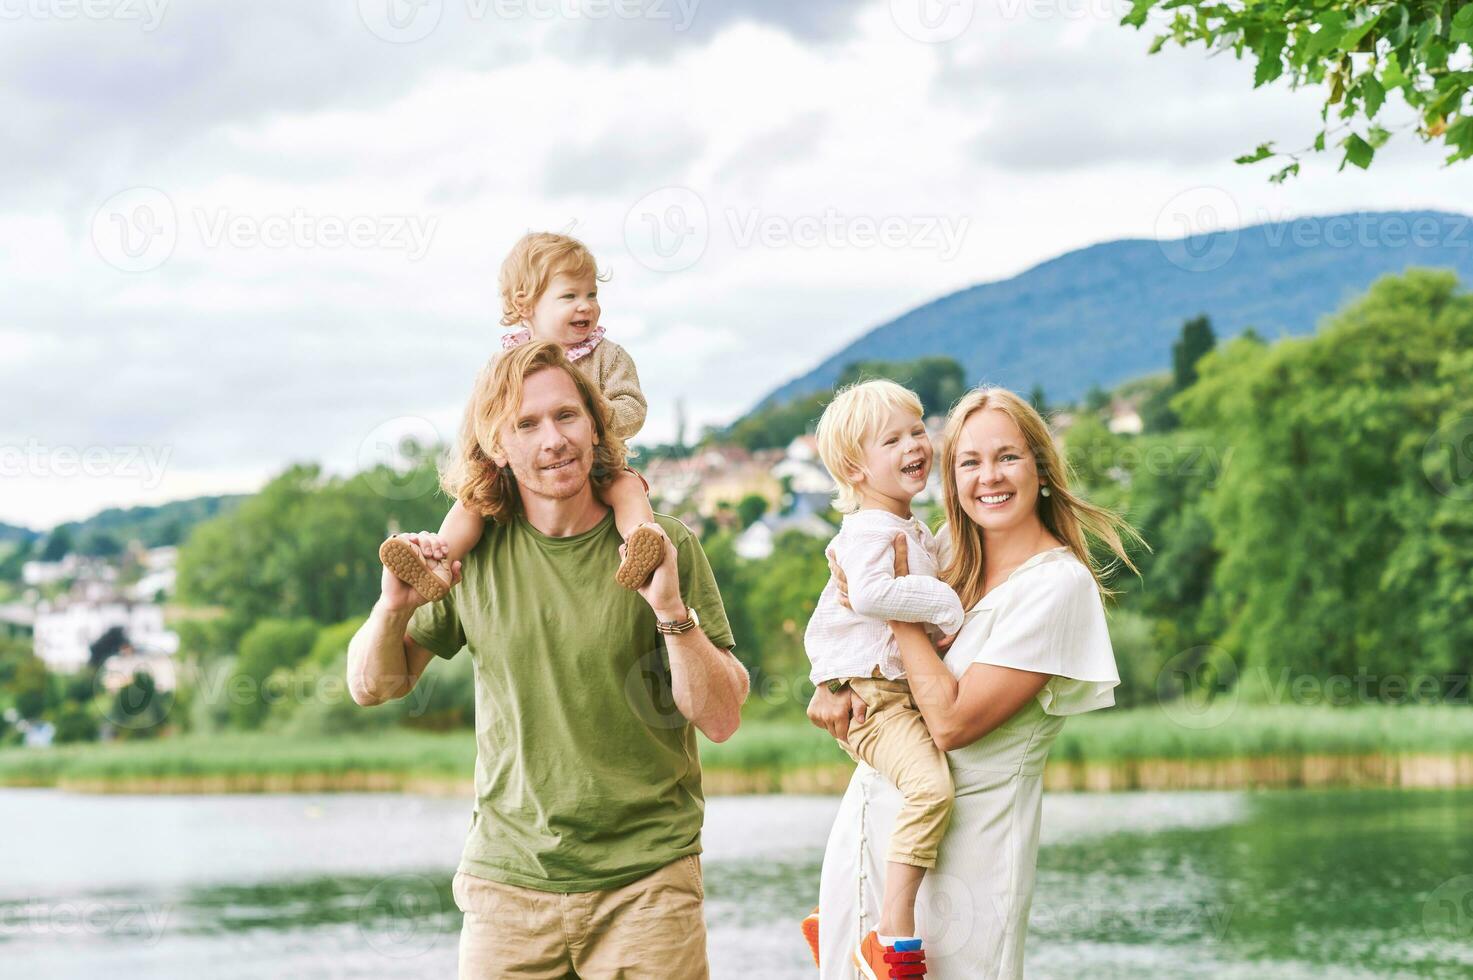 buitenshuis portret van mooi familie, jong paar met kleuter jongen en kleuter meisje poseren De volgende naar meer of rivier- foto